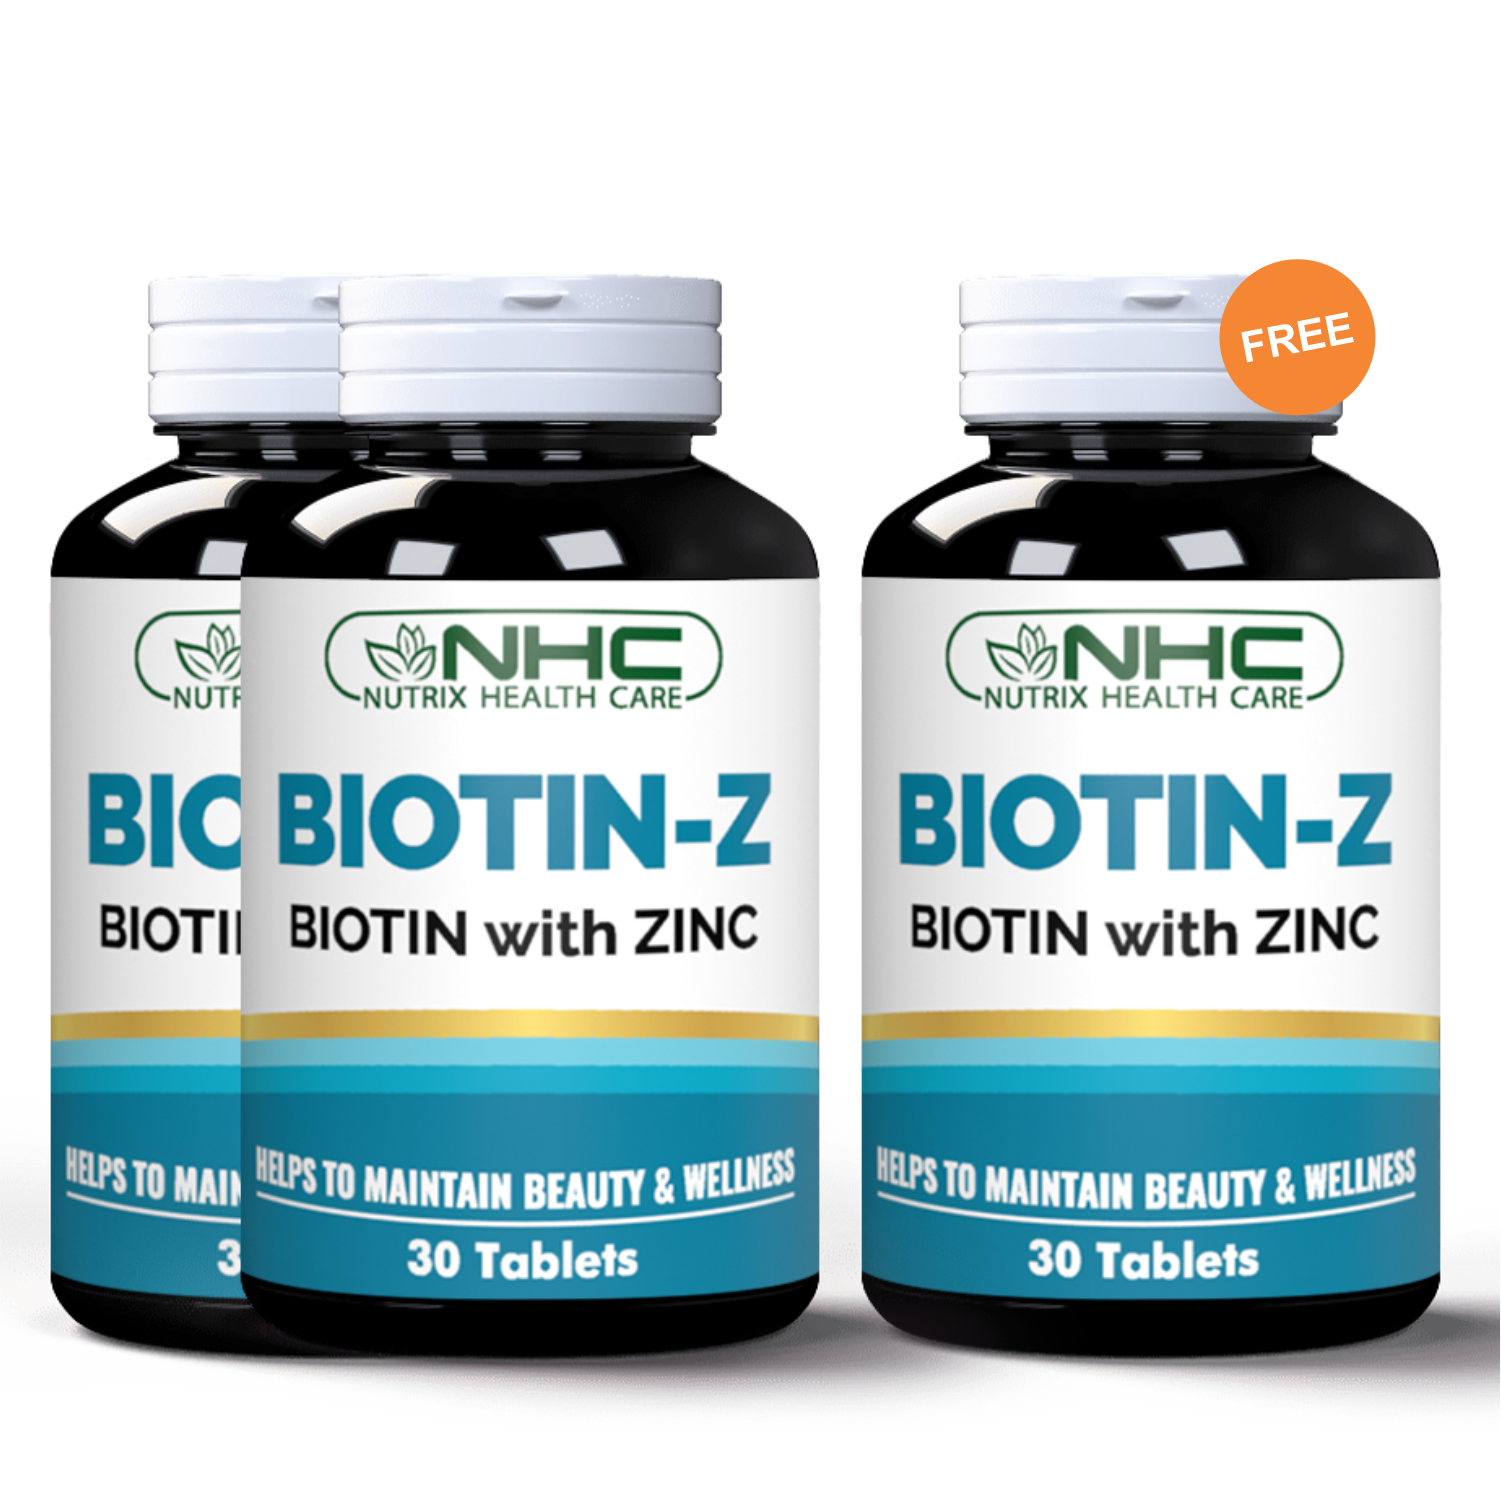 2 Biotin-Z + 1 Biotin-Z free